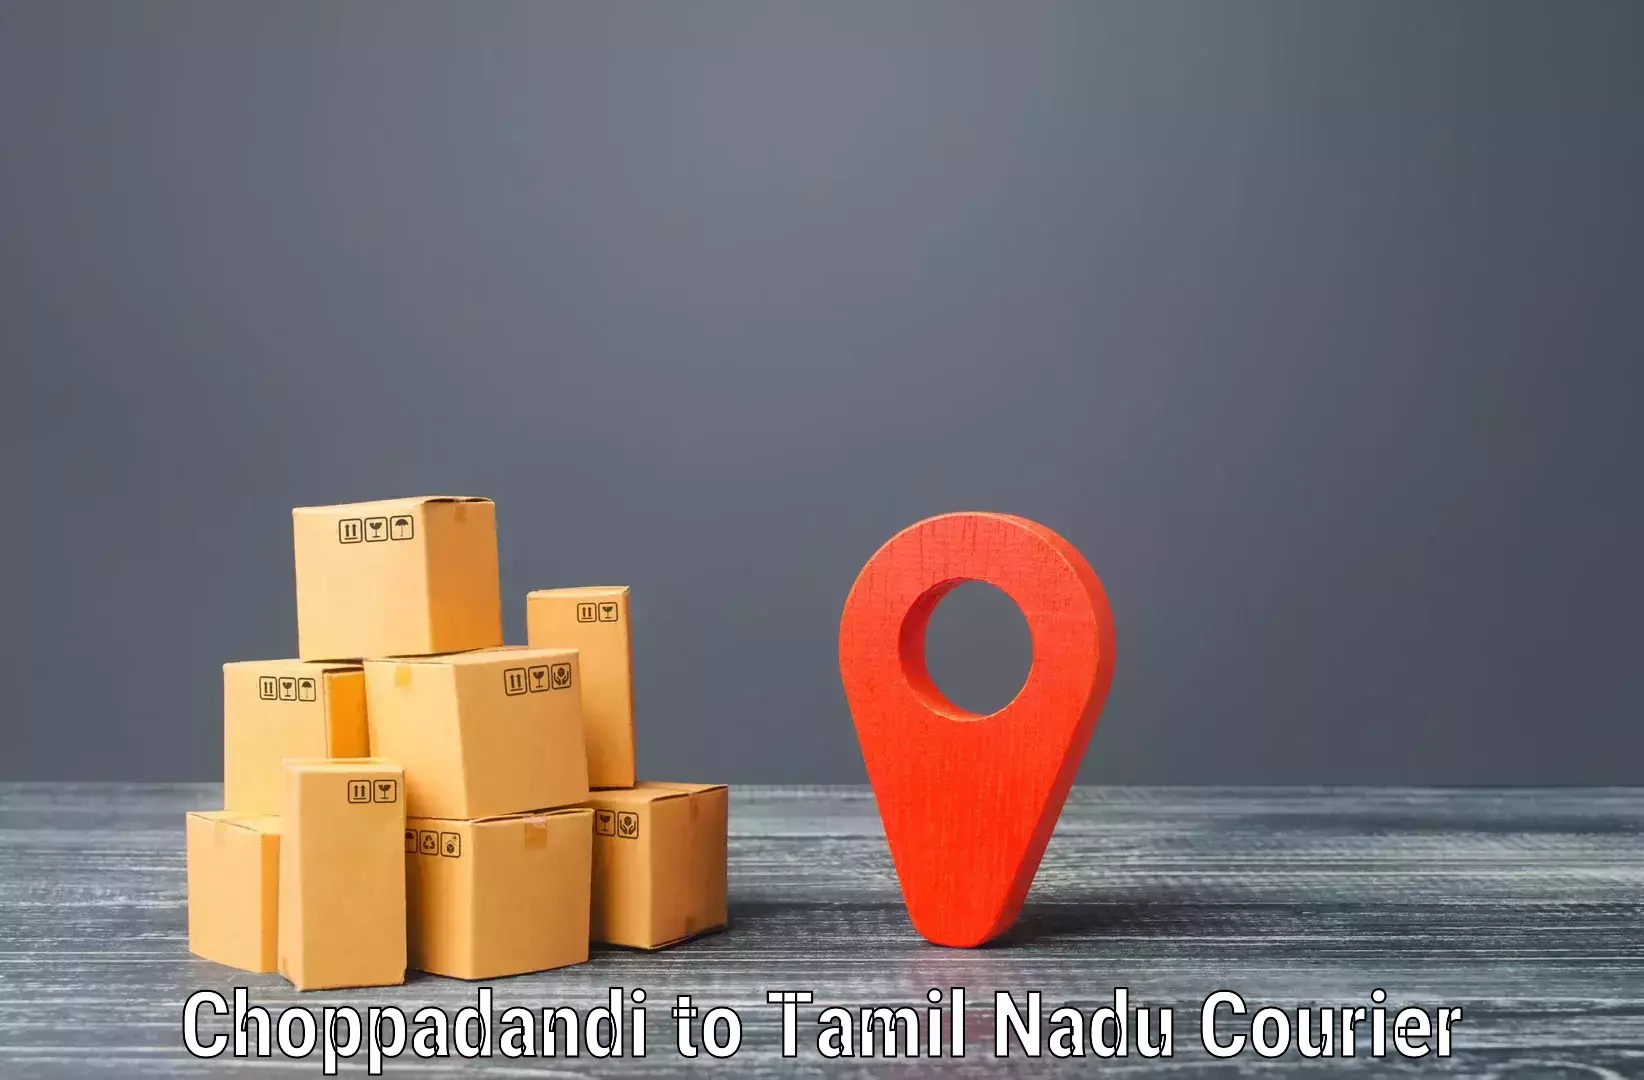 Next-day delivery options Choppadandi to Kanchipuram